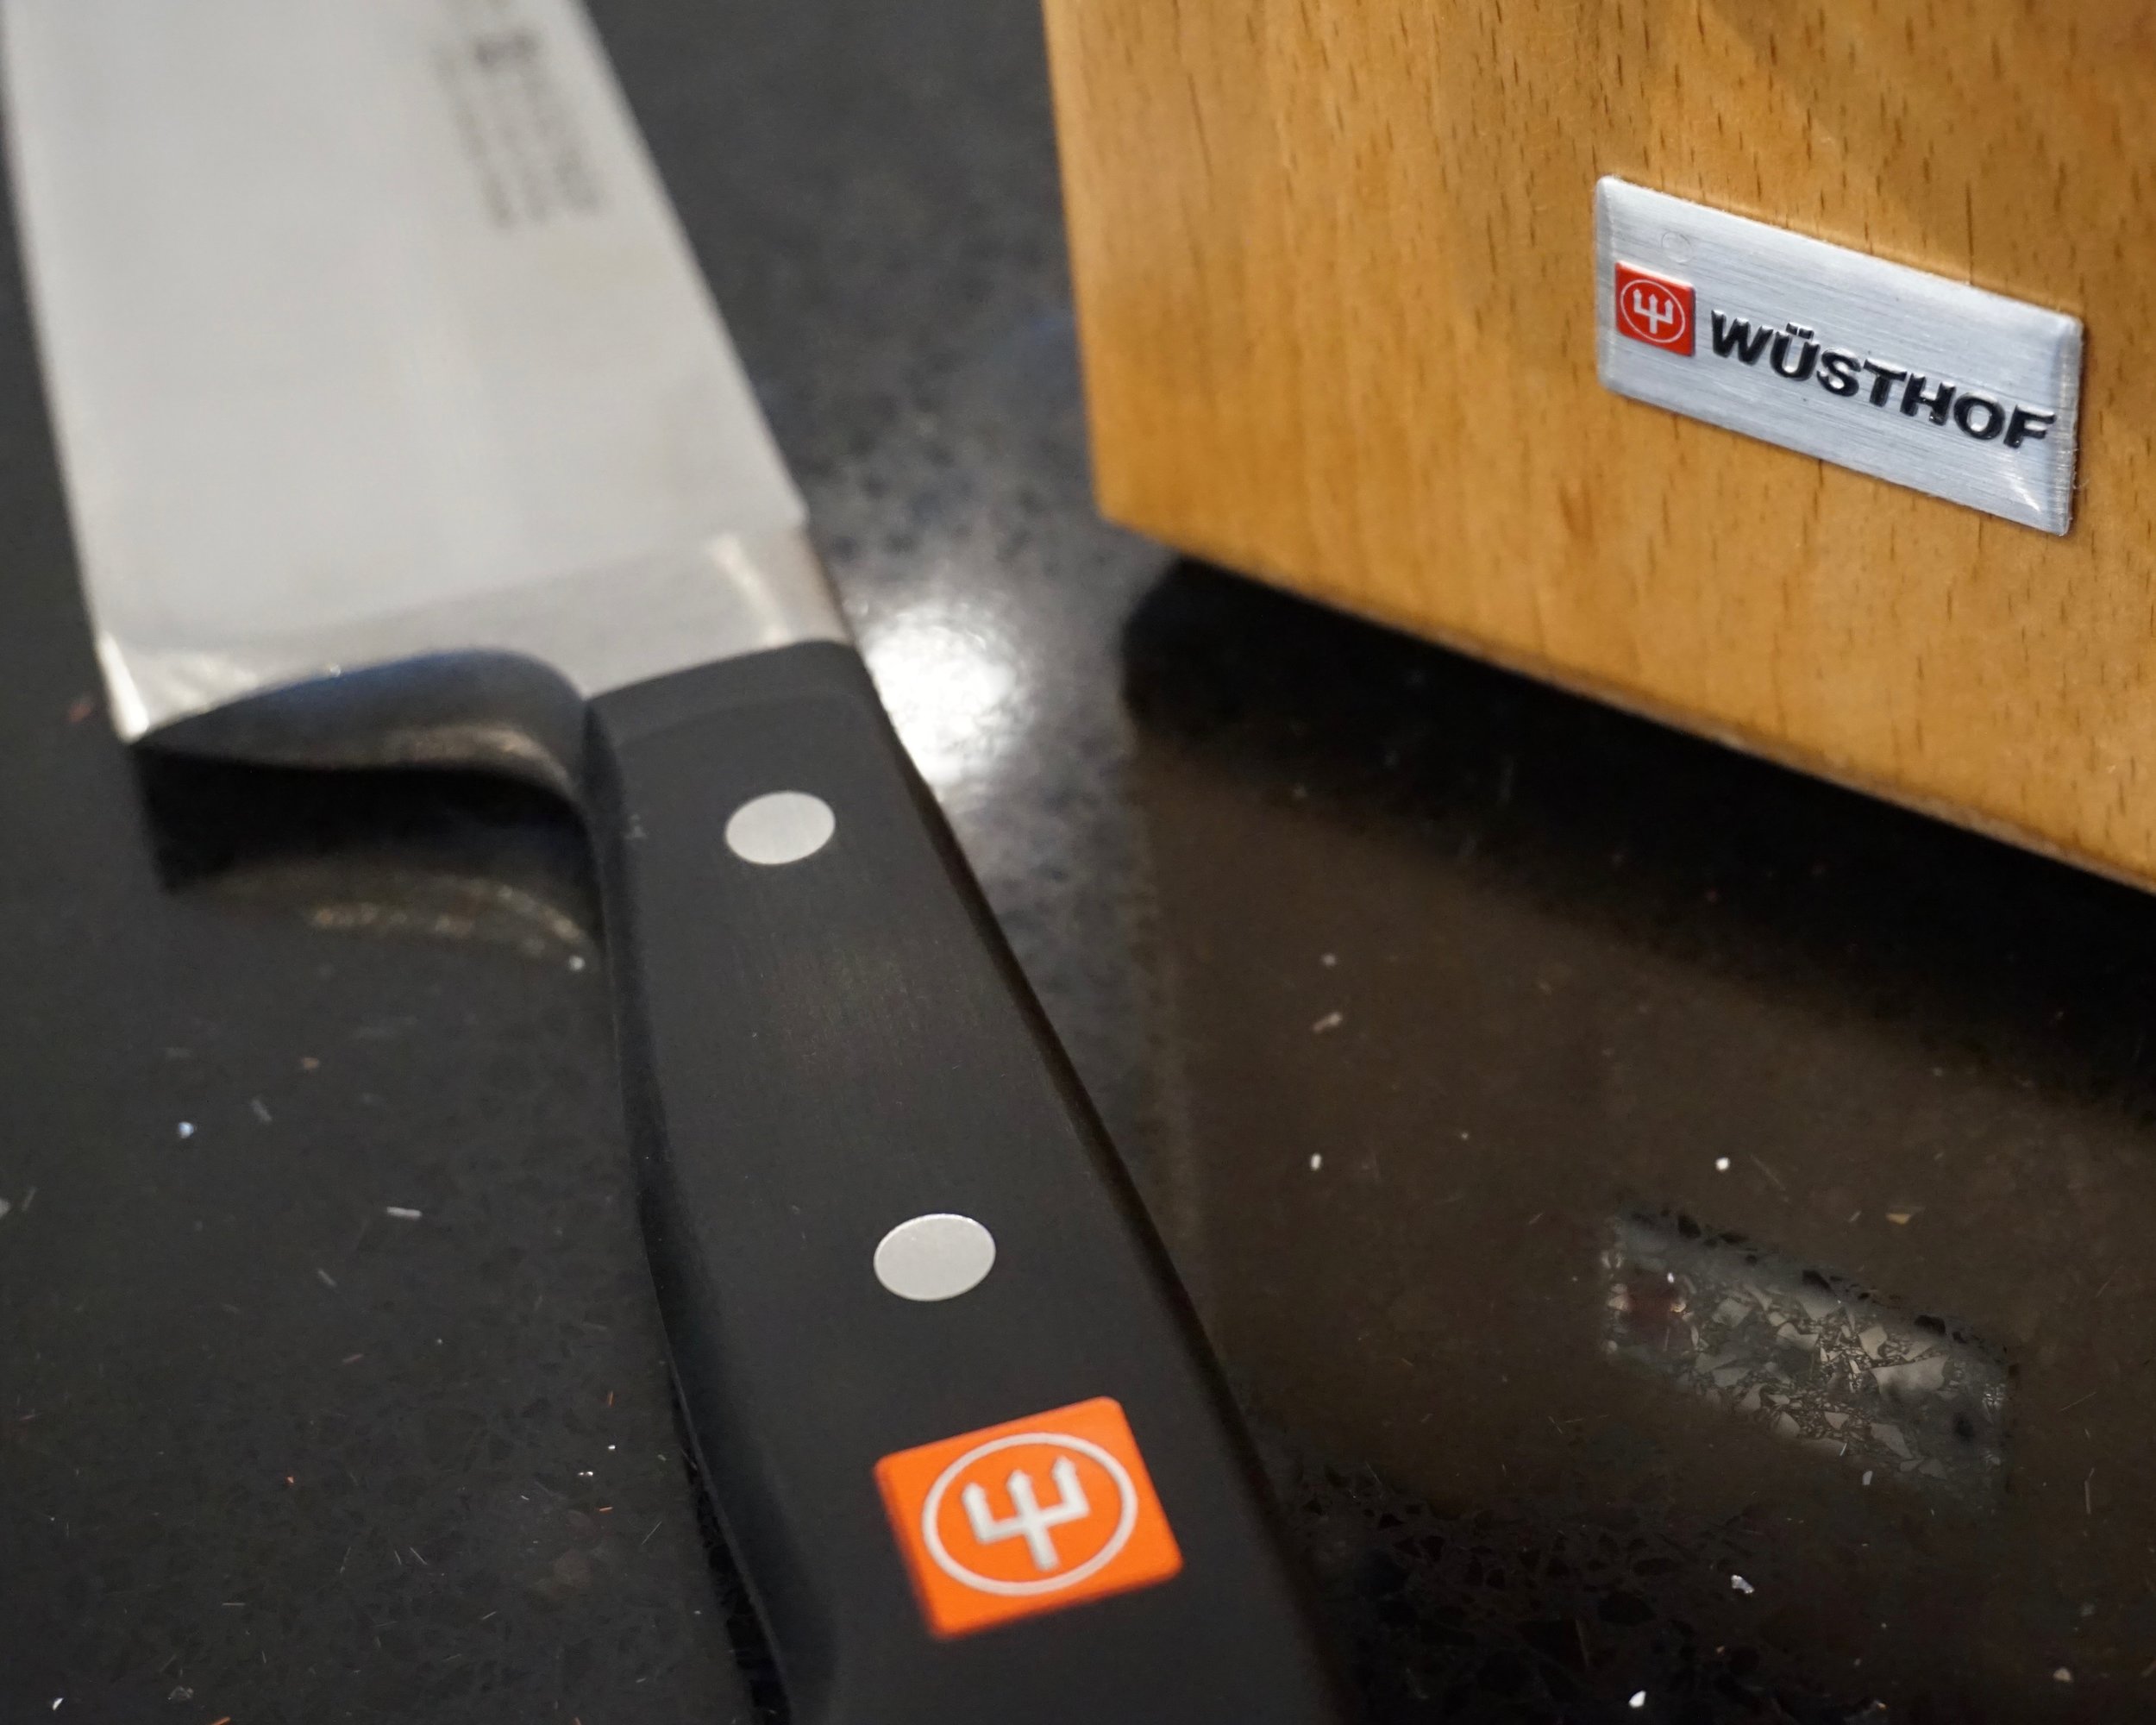 Wusthof knives in kitchen studio